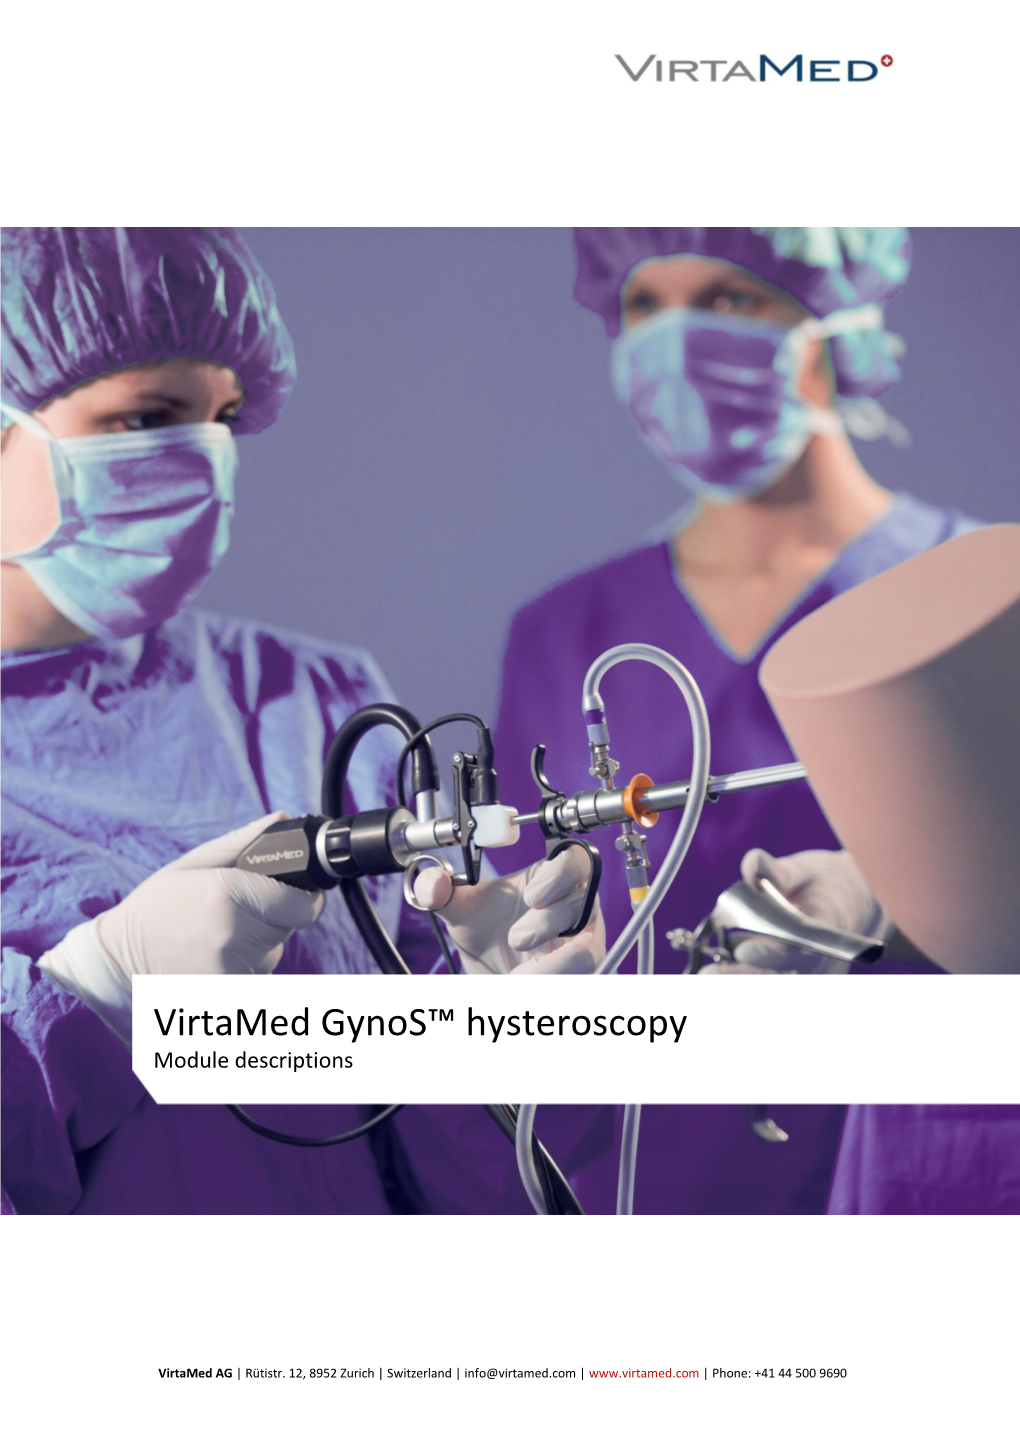 Virtamed Gynos™ Hysteroscopy Module Descriptions